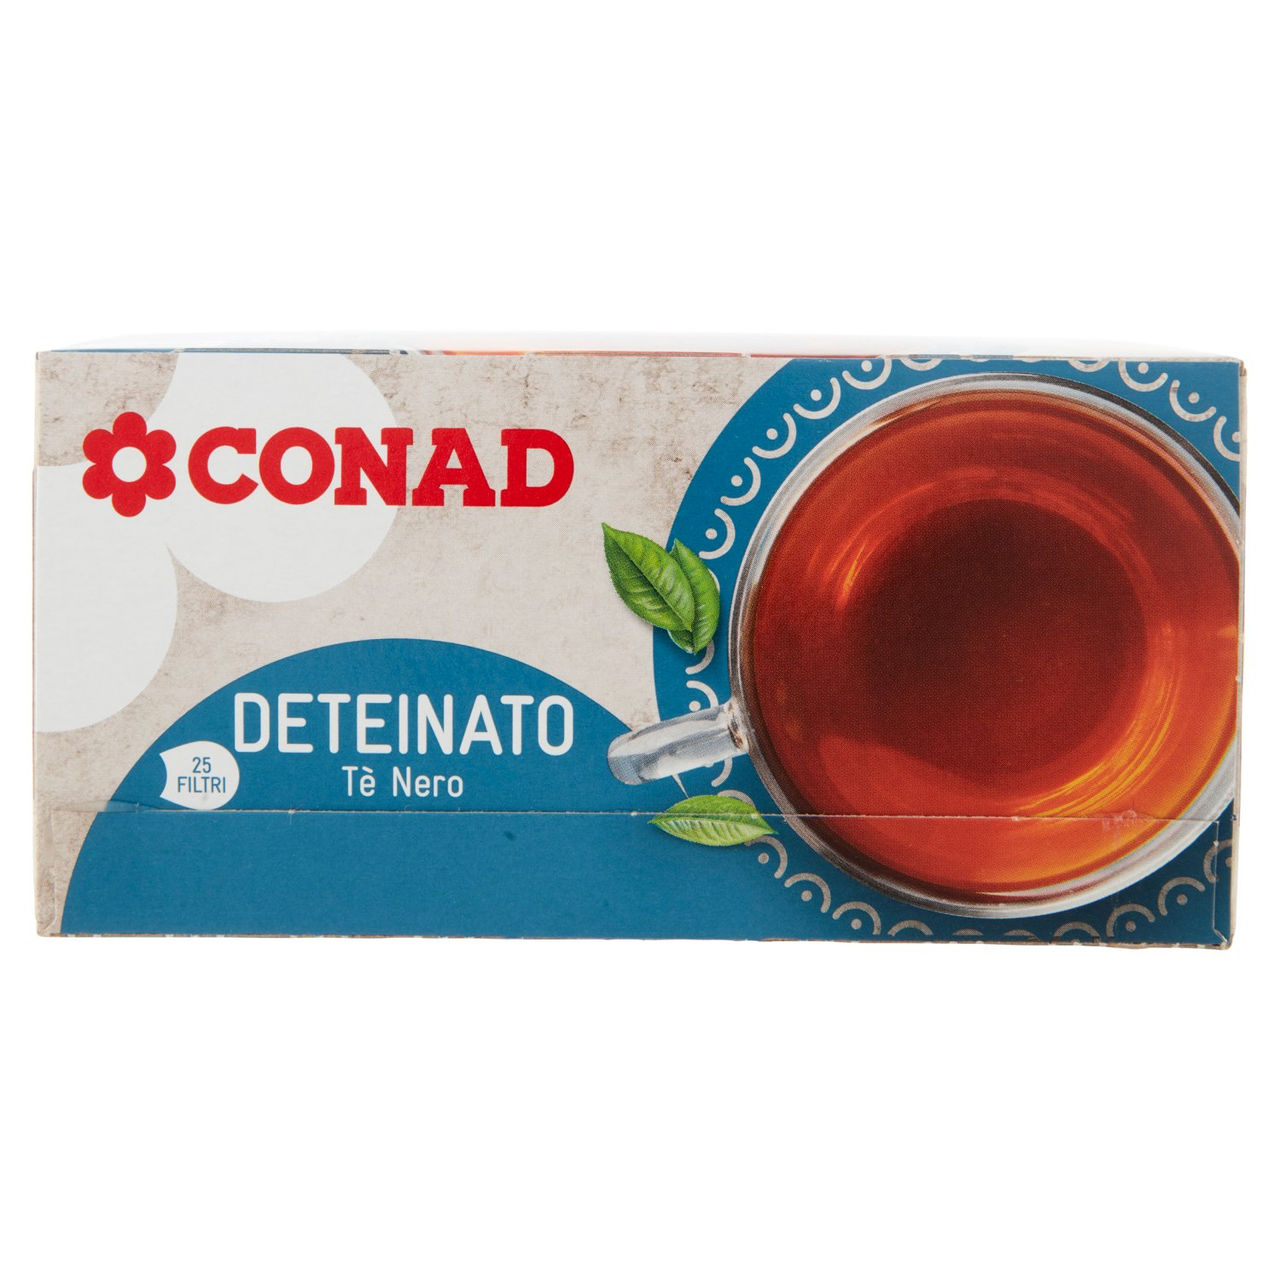 Deteinato Tè Nero 25 filtri da 1,5 g Conad